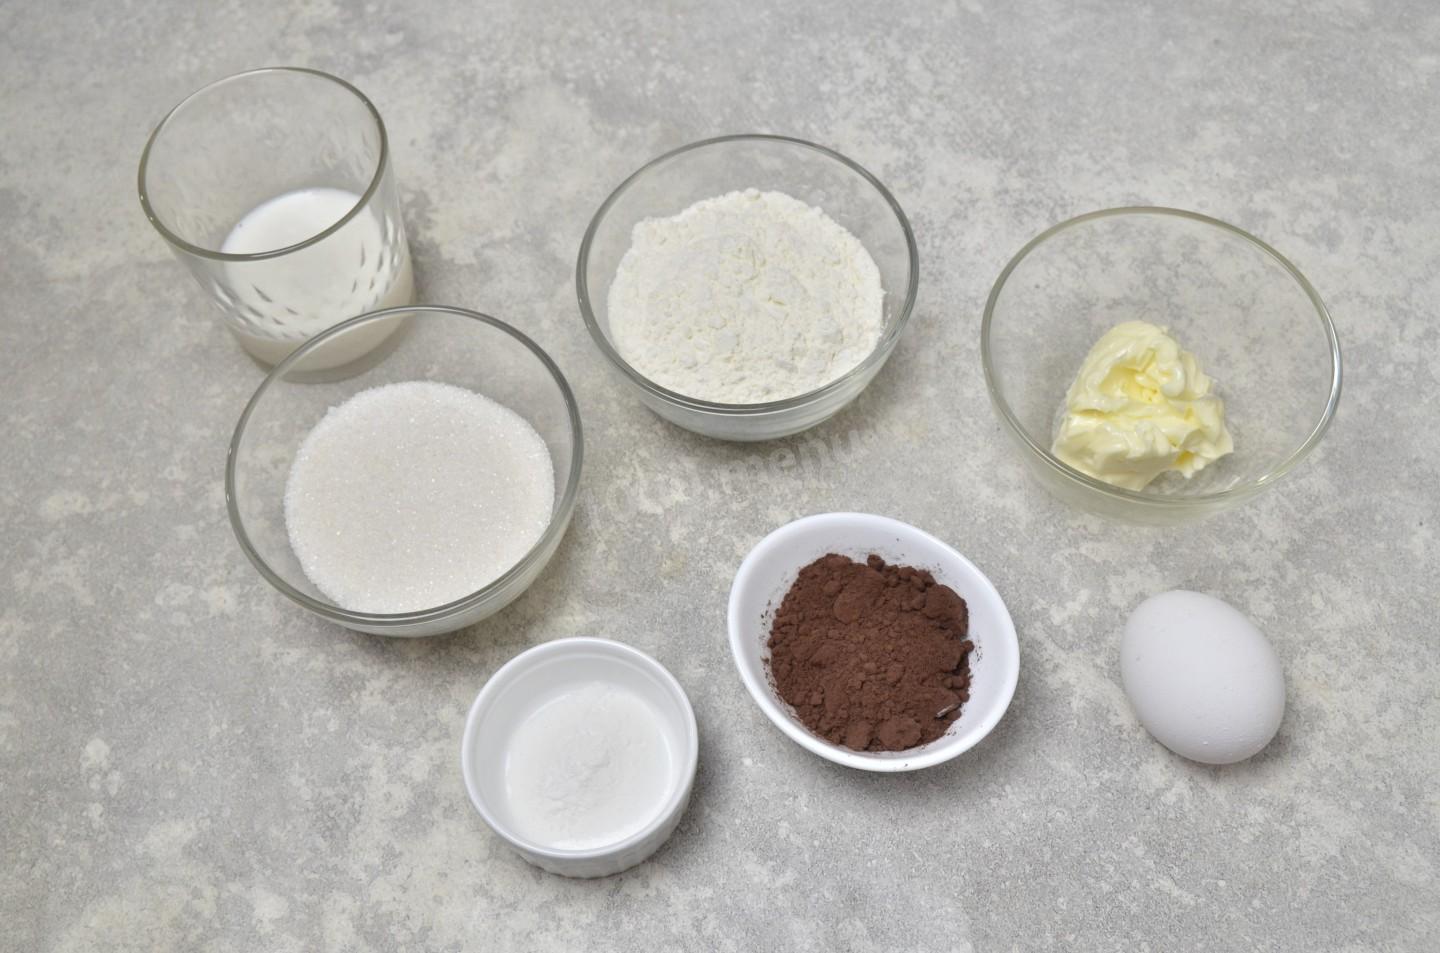 Масло 1 яйцо дрожжи мука. Как сделать шоколад с солью. Фото для рецепта соль шоколад сахар сливки 4 яйца. Рецепт для толстый стать.